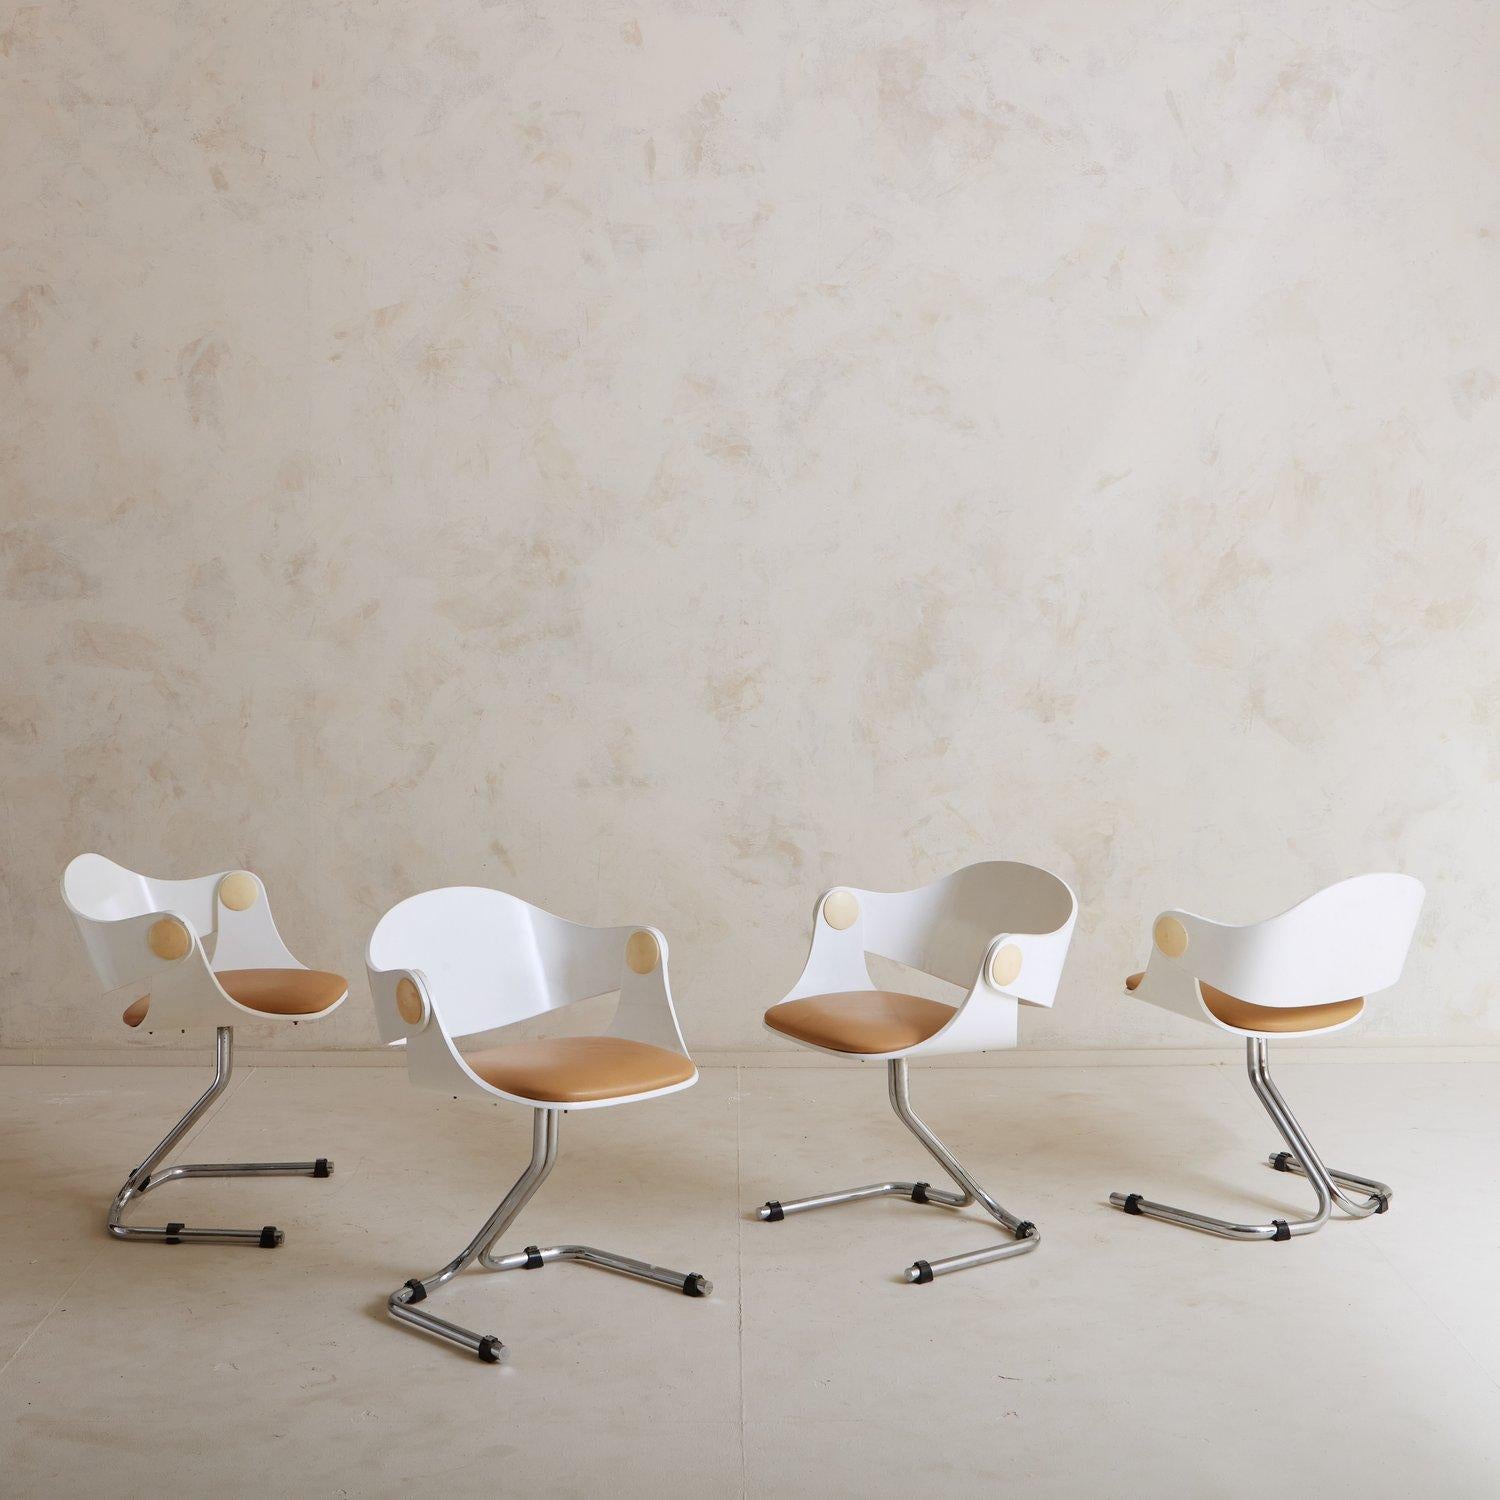 Ein Satz von vier Esszimmerstühlen aus den 1960er Jahren, die Eugen Schmidt für Soloform entworfen hat. Diese Stühle haben ein weißes Holzgestell und taupefarbene Ledersitze. Die Rückenlehnen sind an den Armlehnen mit einem taupefarbenen runden